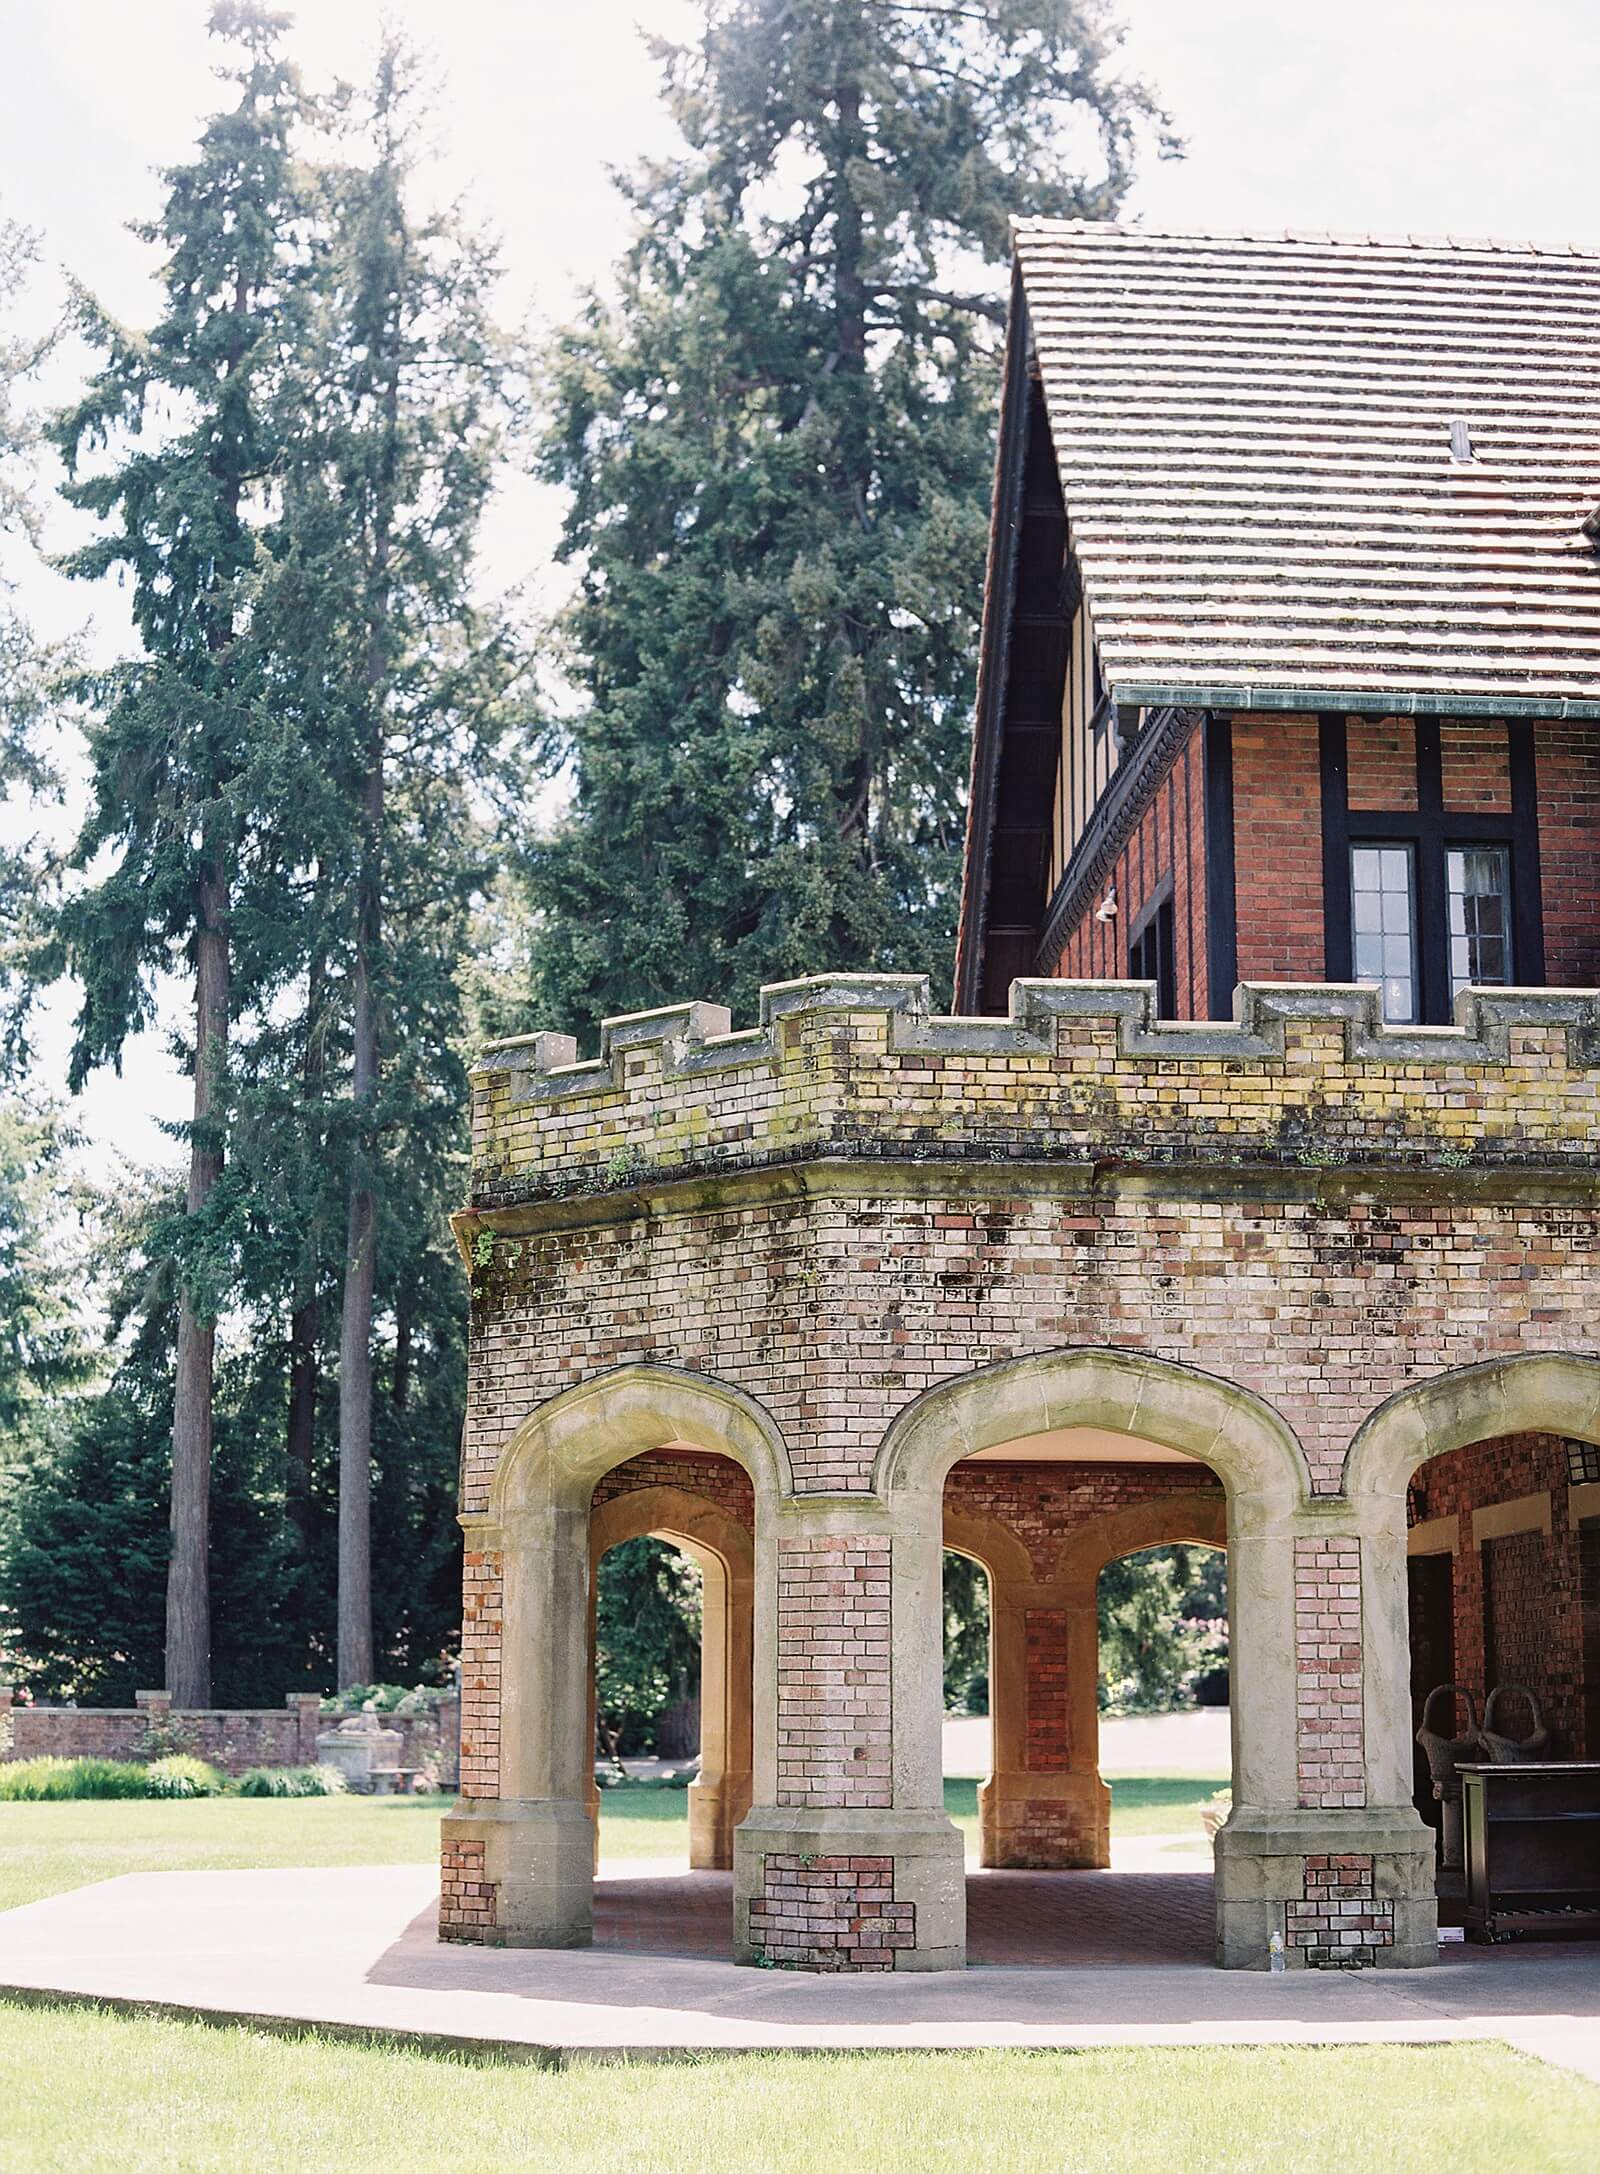 Thornewood Castle arches at Seattle wedding venue - Jacqueline Benét Photography